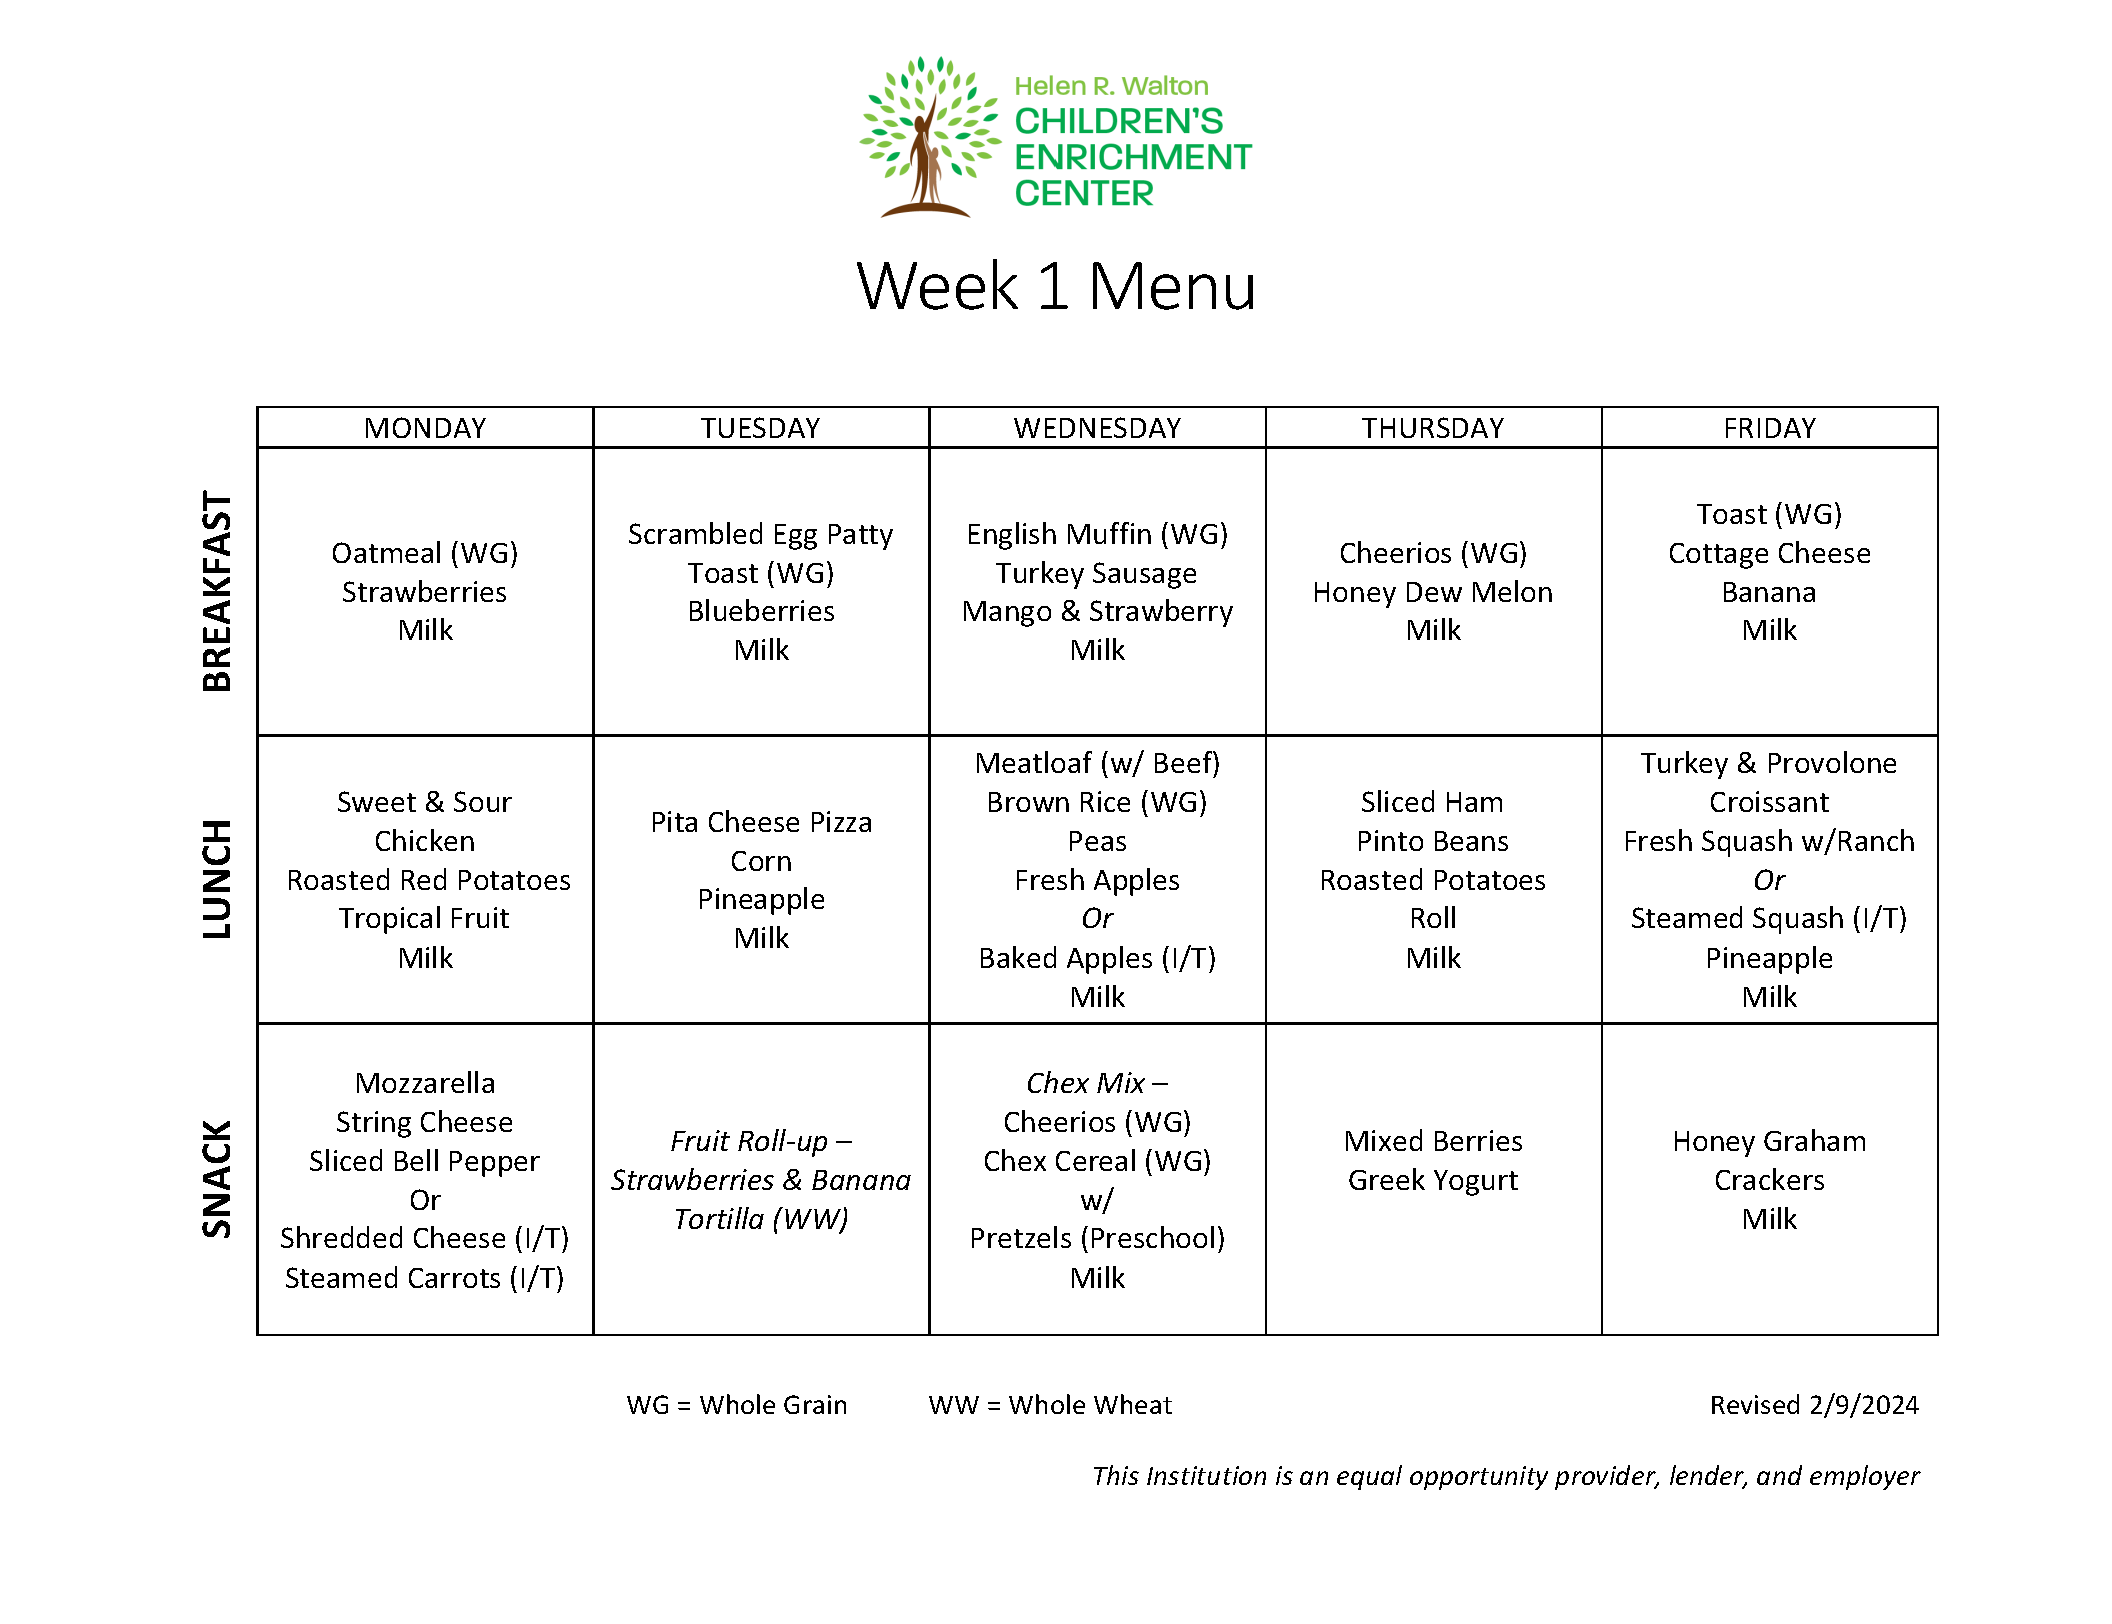 Menu & Schedule — Helen R. Walton Children's Enrichment Center